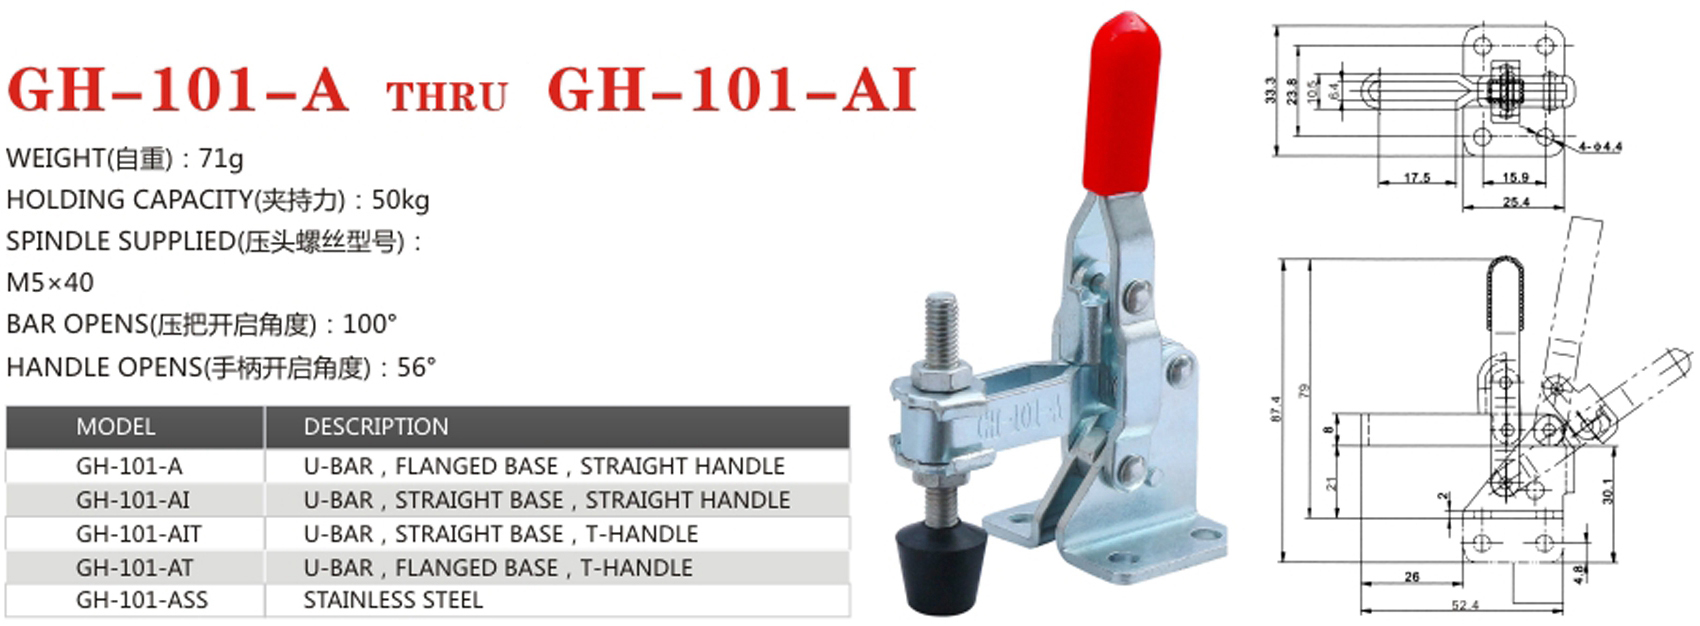 Vertical toggle clamp GH-101-A7ek